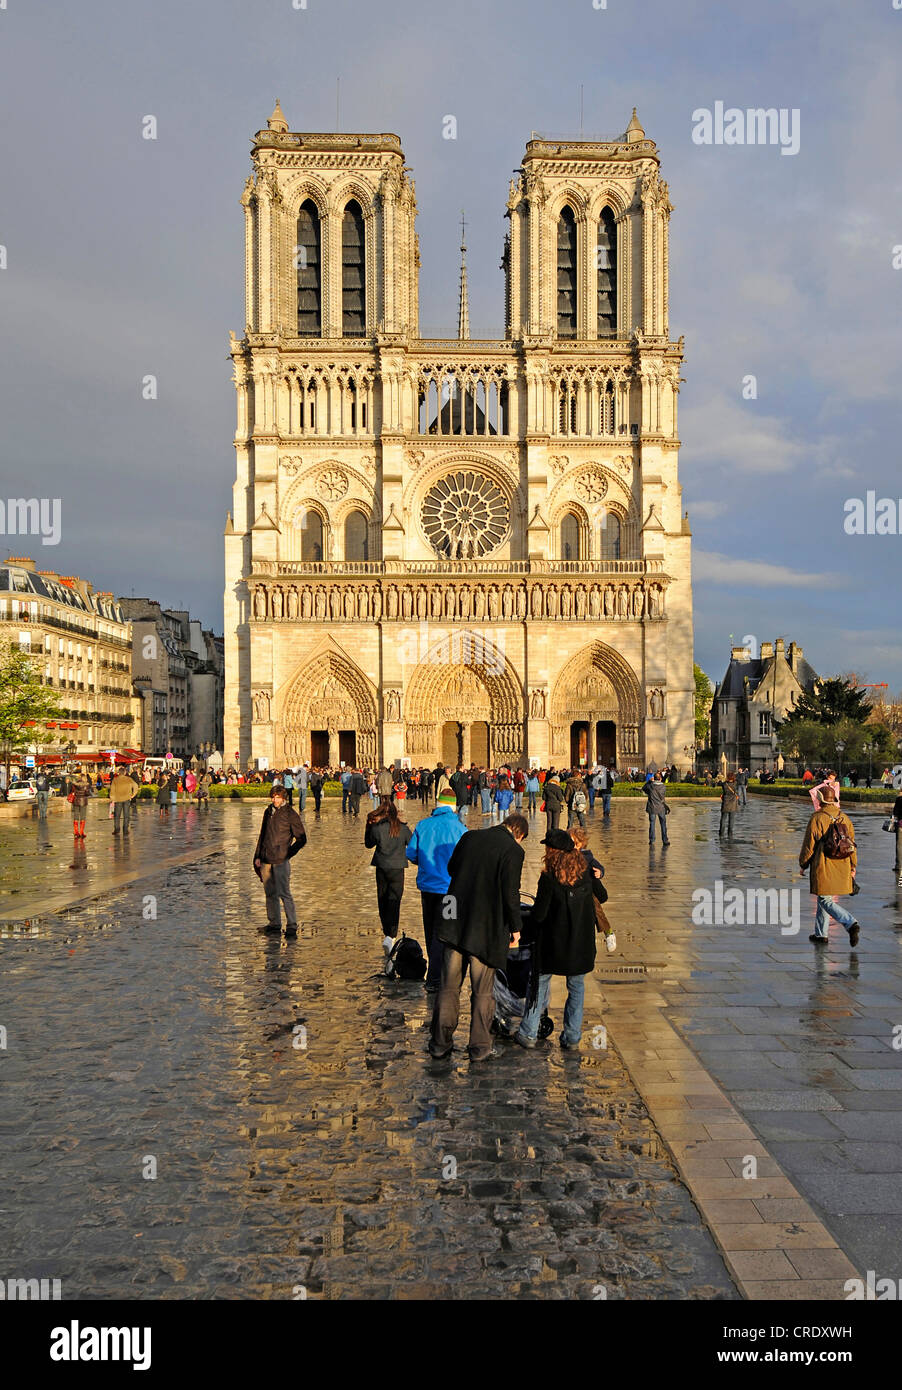 Notre Dame de Paris, western facade, France, Paris Stock Photo